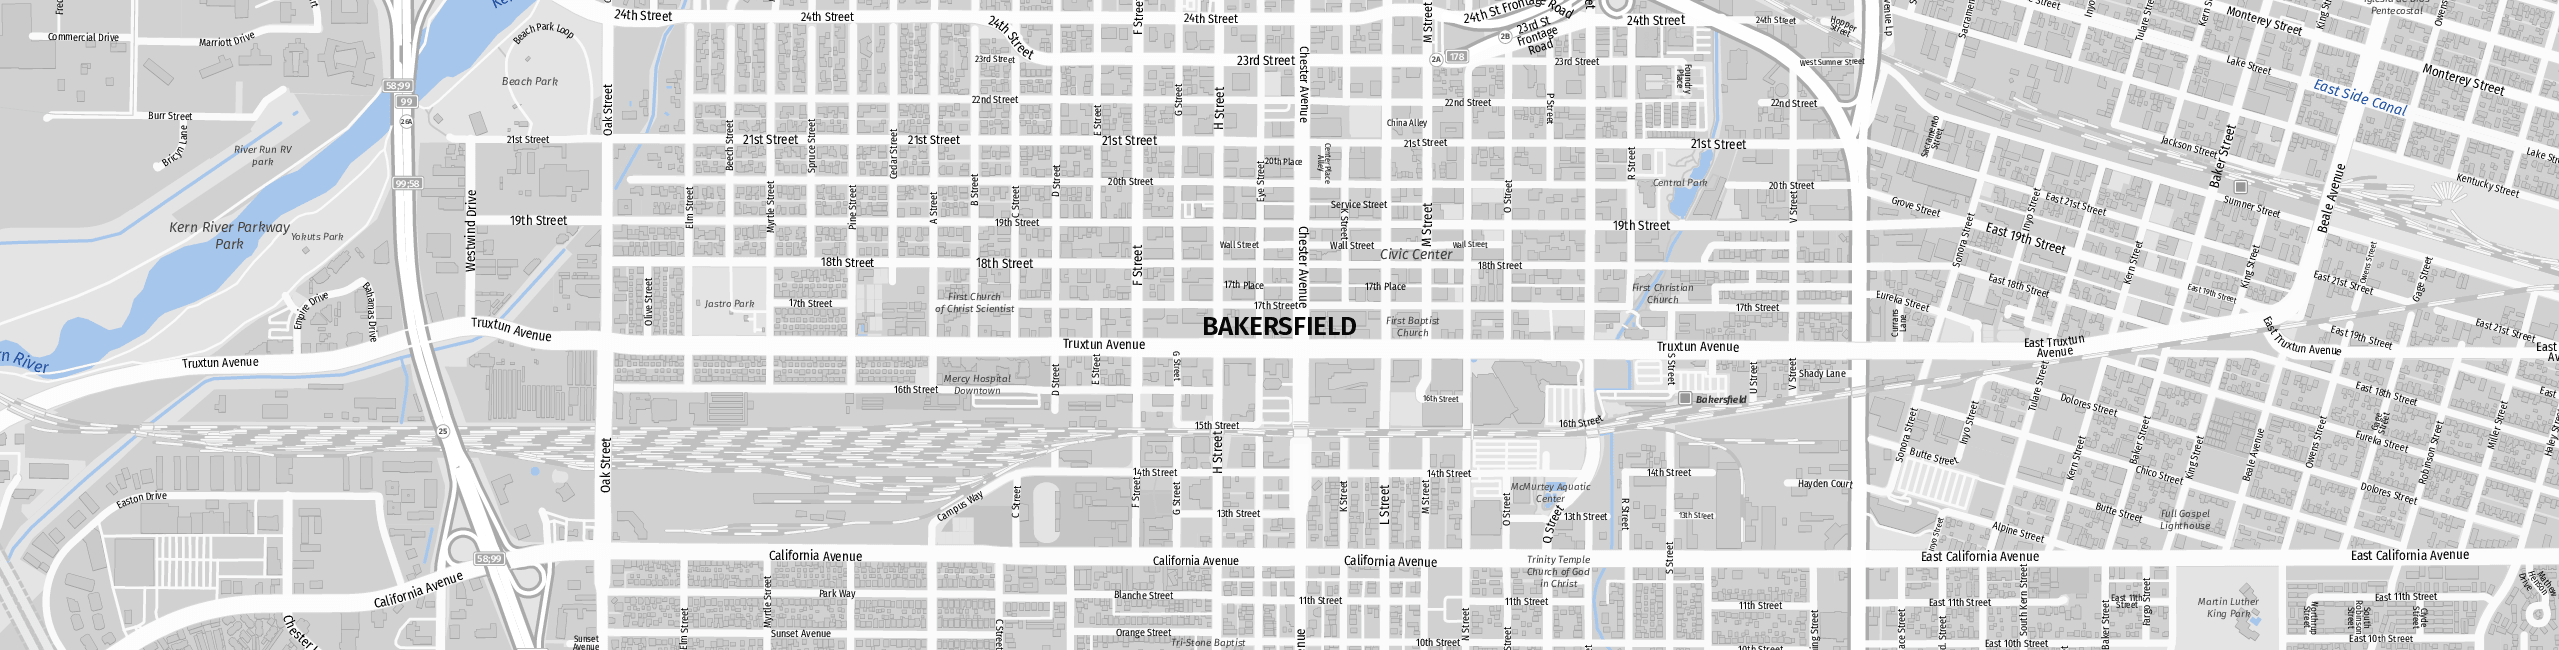 Stadtplan Bakersfield zum Downloaden.